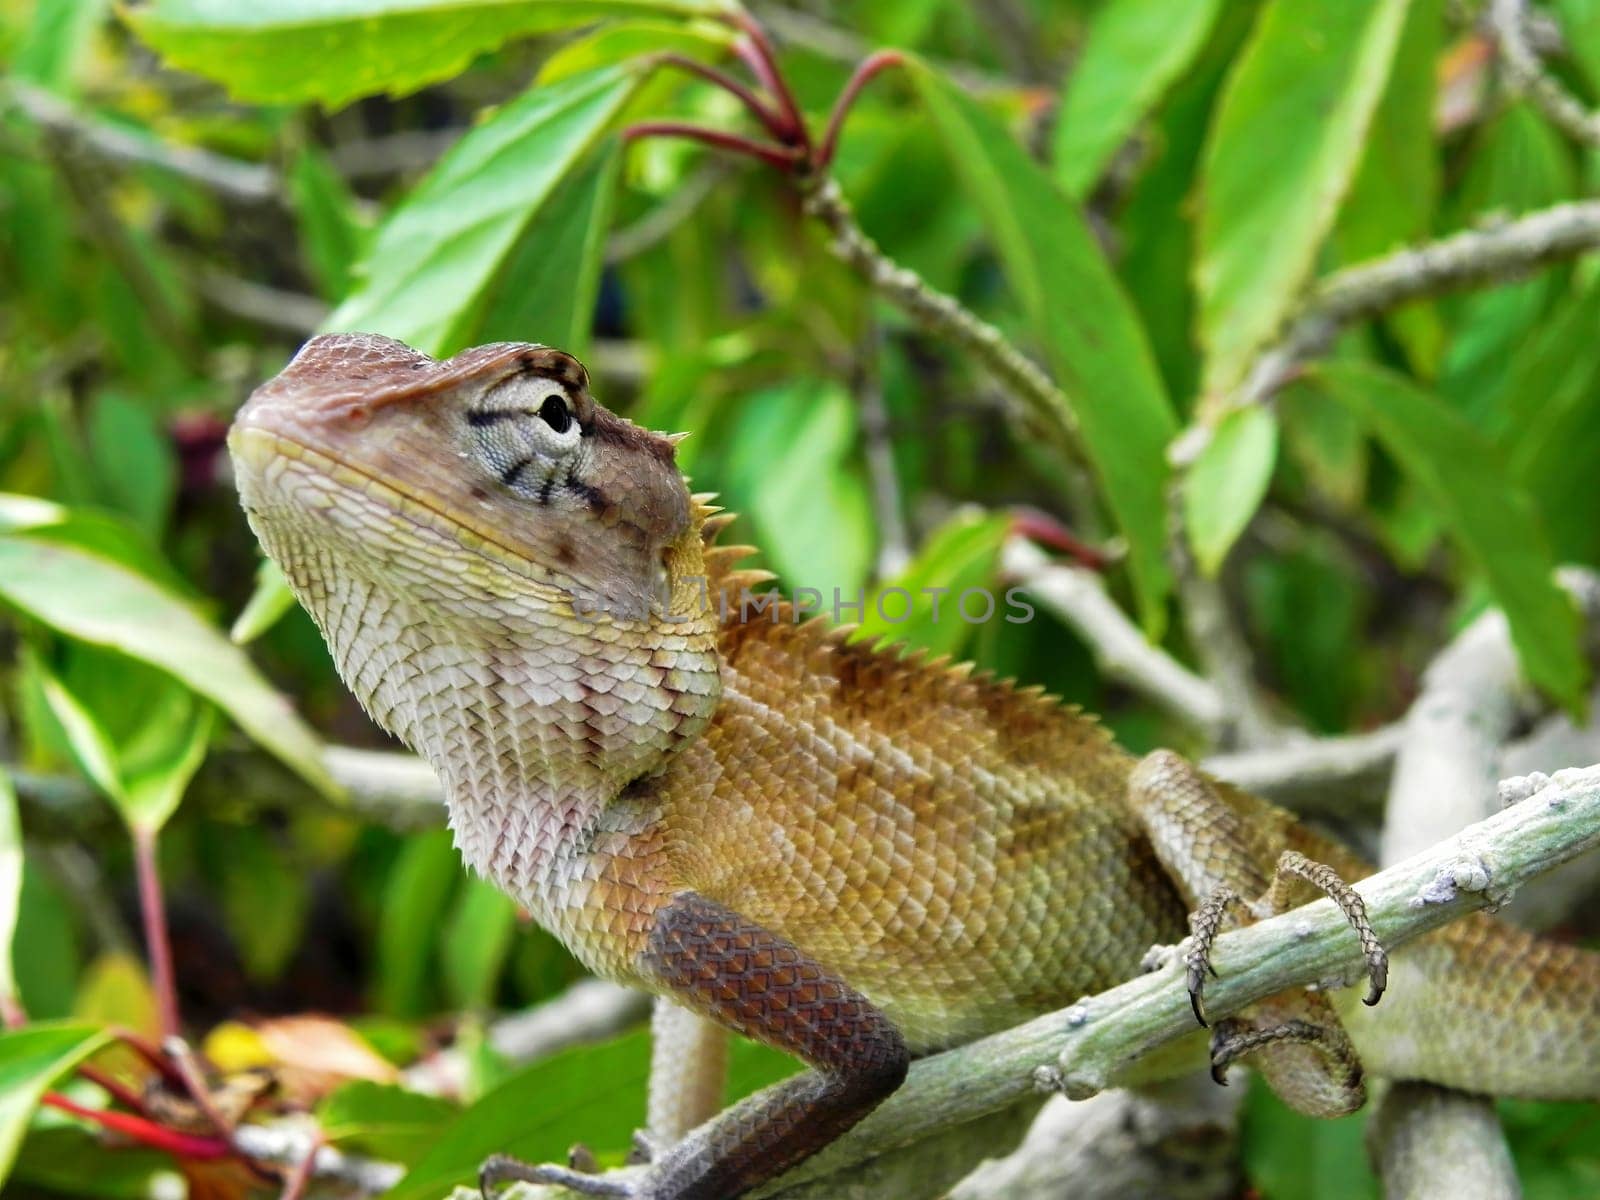 Green lizard on branch, green lizard sunbathing on branch, green lizard climb on wood.